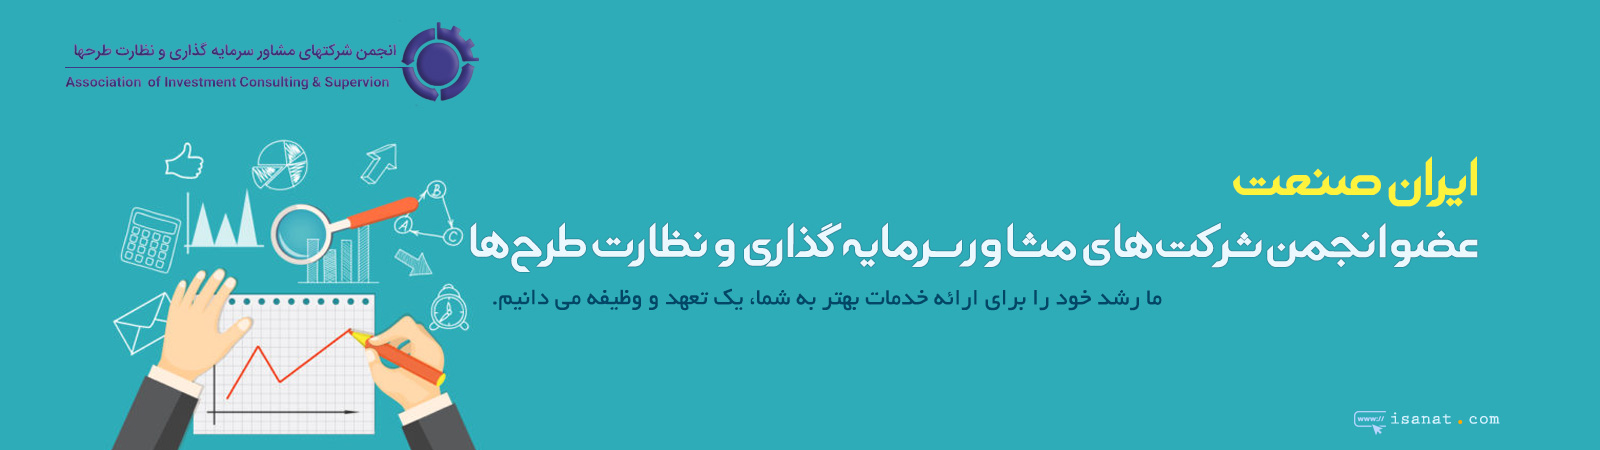  ایران صنعت عضو انجمن شرکت های مشاور سرمایه گذاری و نظارت طرح ها